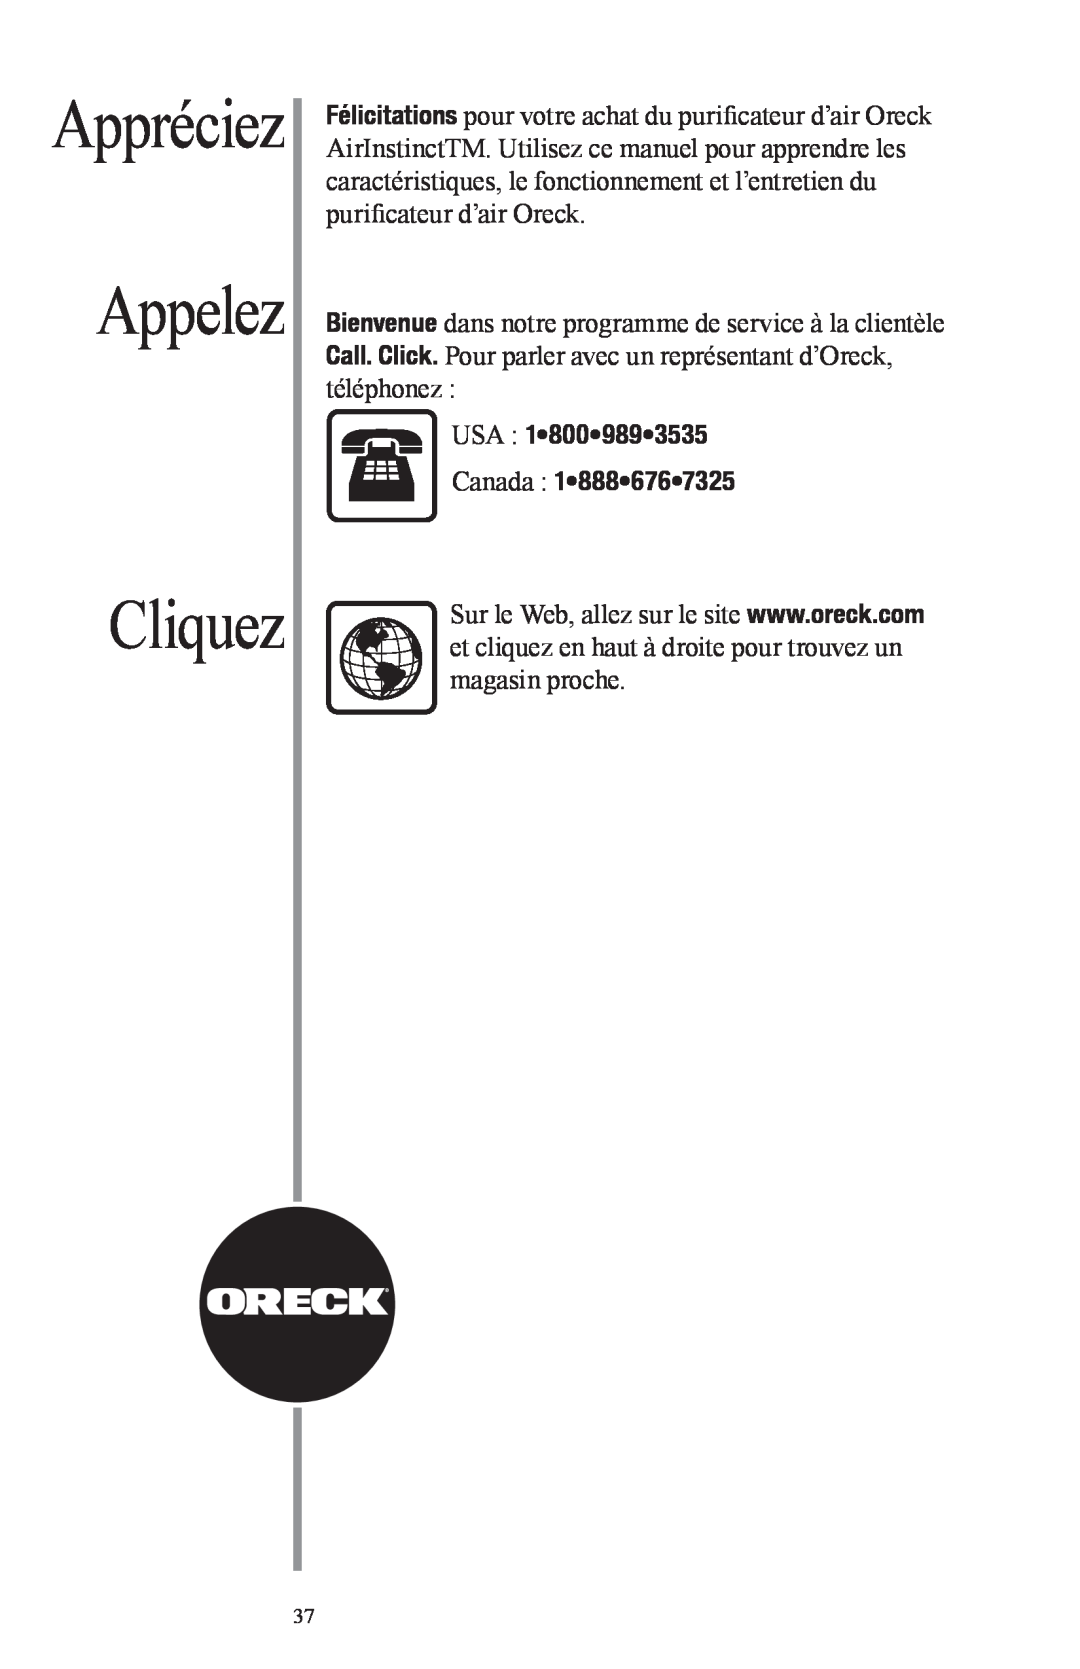 Oreck Air manual Cliquez, Appelez, Appréciez, USA 1 800 989 3535 Canada 